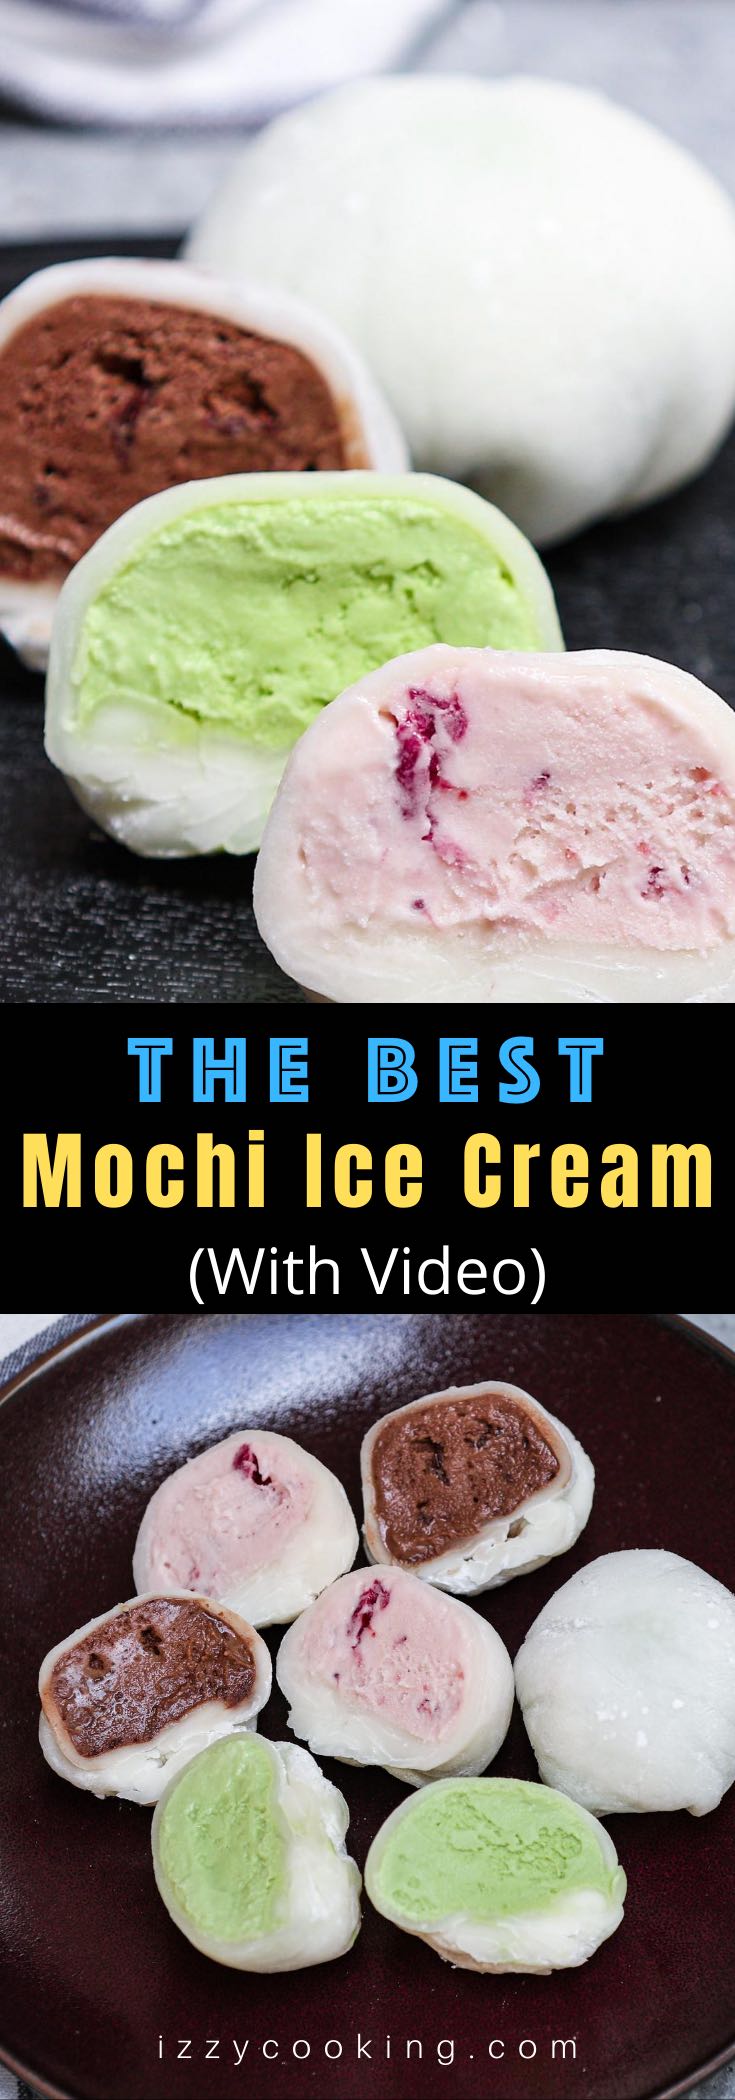 mochi ice cream flavors